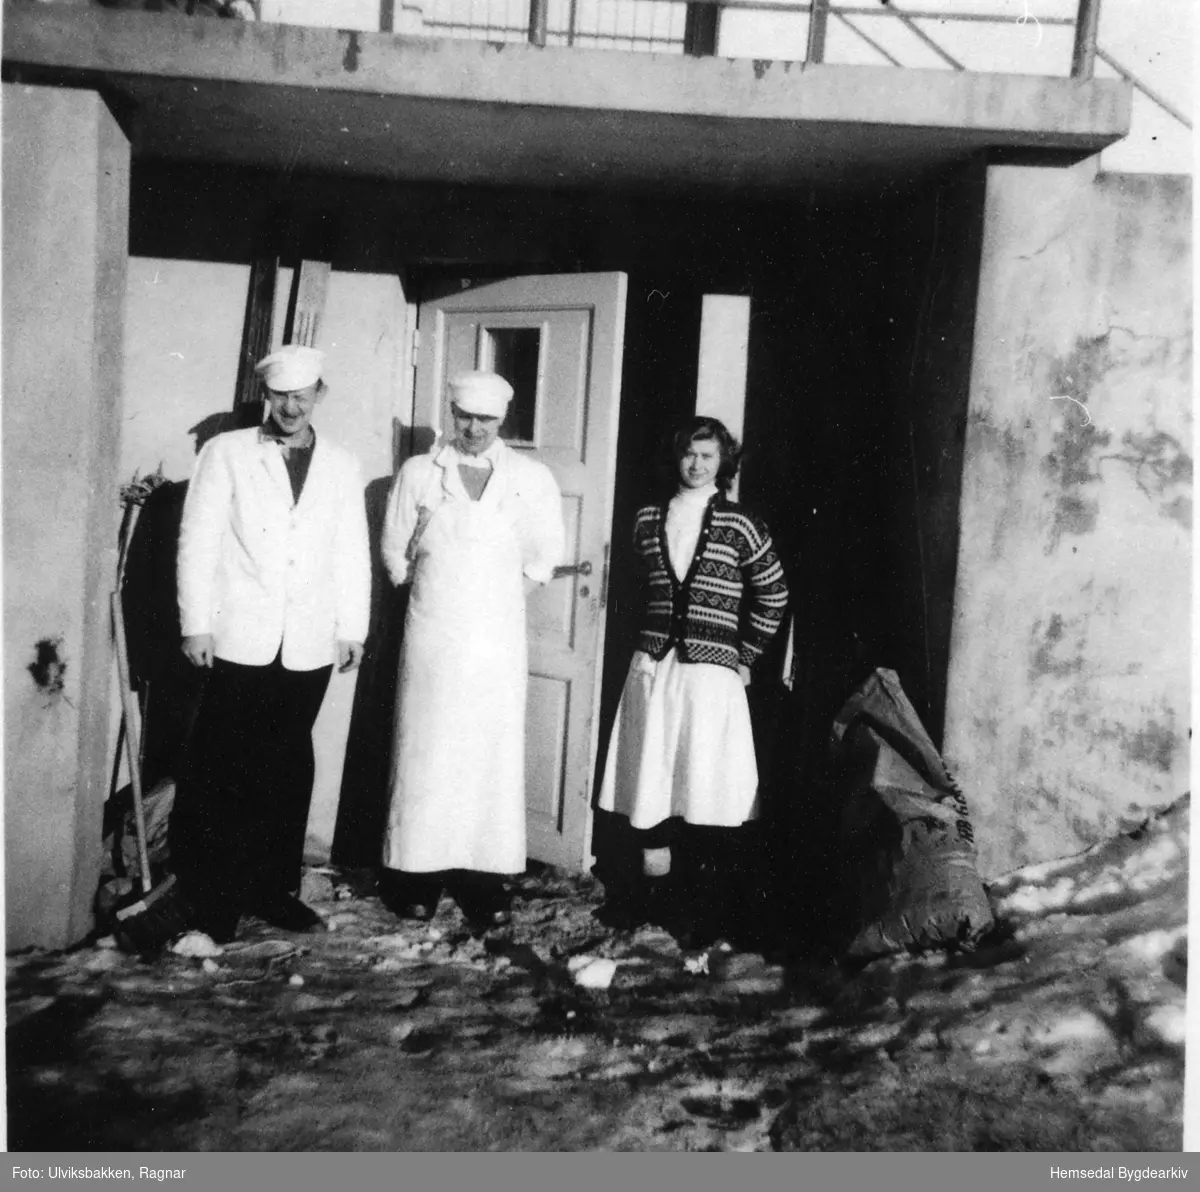 Tilsette ved døra til pølsemakeriet i Hemsedal Kjøttforretning i 1958.
Frå venstre: Arvid Bækken, Knut Anderdal og Randi Gulliksden